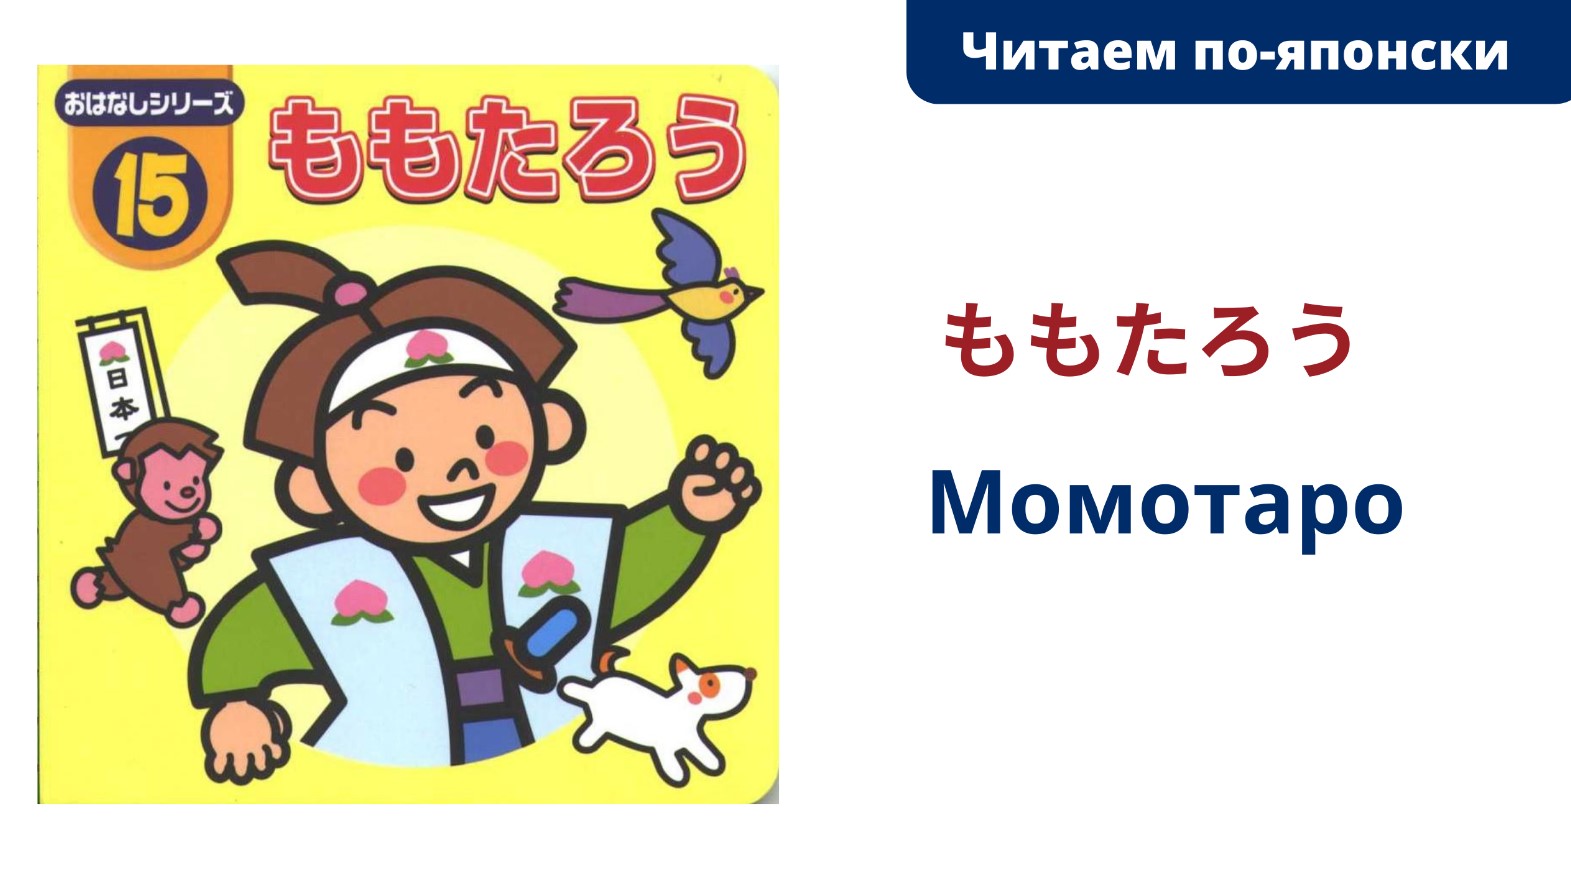 Читаем по-японски. Сказка "Момотаро" (ももたろう)